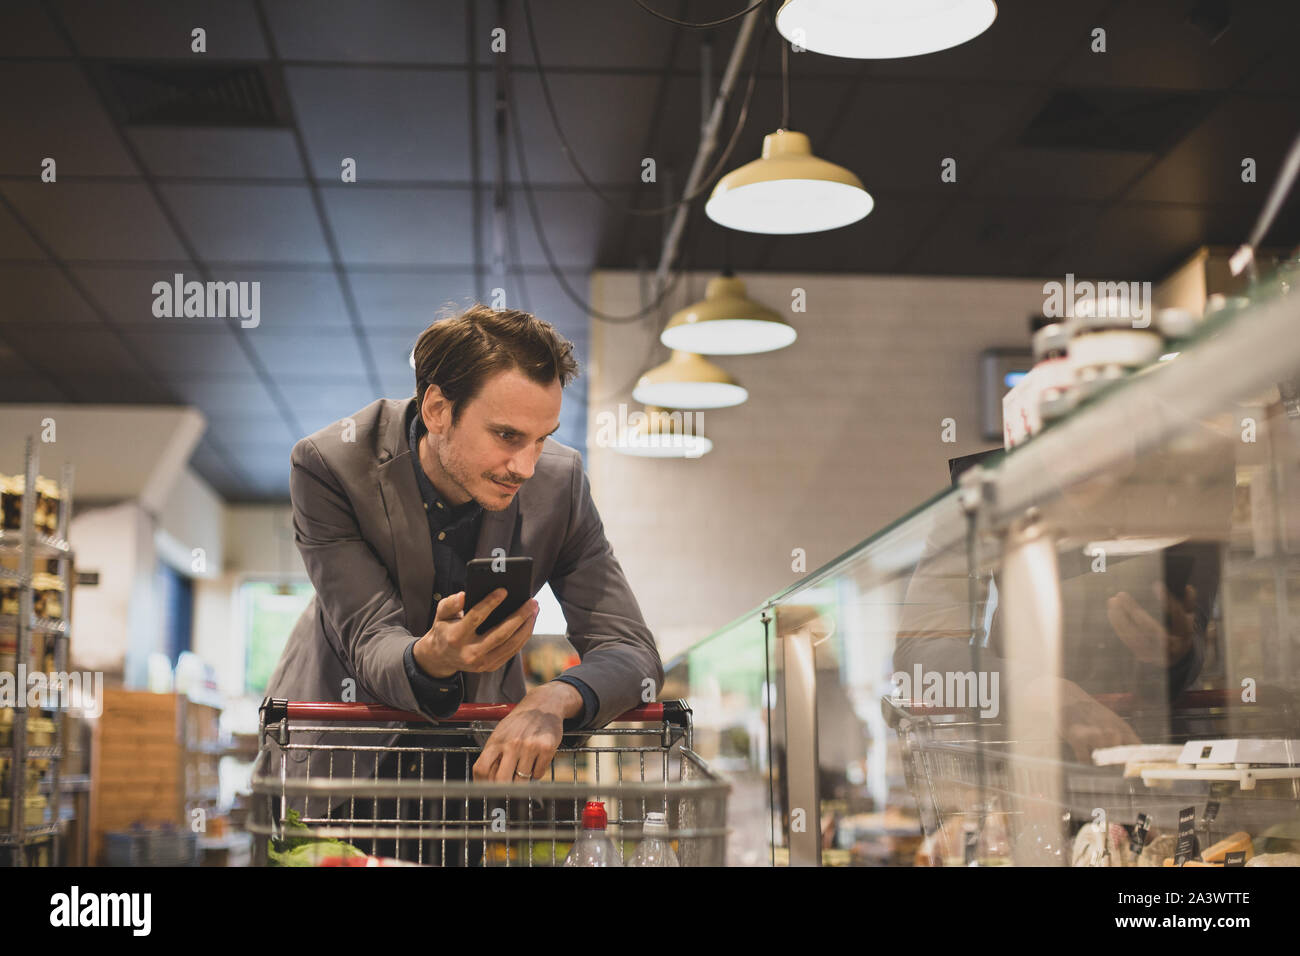 Erwachsene männliche Shopper bei Deli Zähler in einem Lebensmittelgeschäft Stockfoto